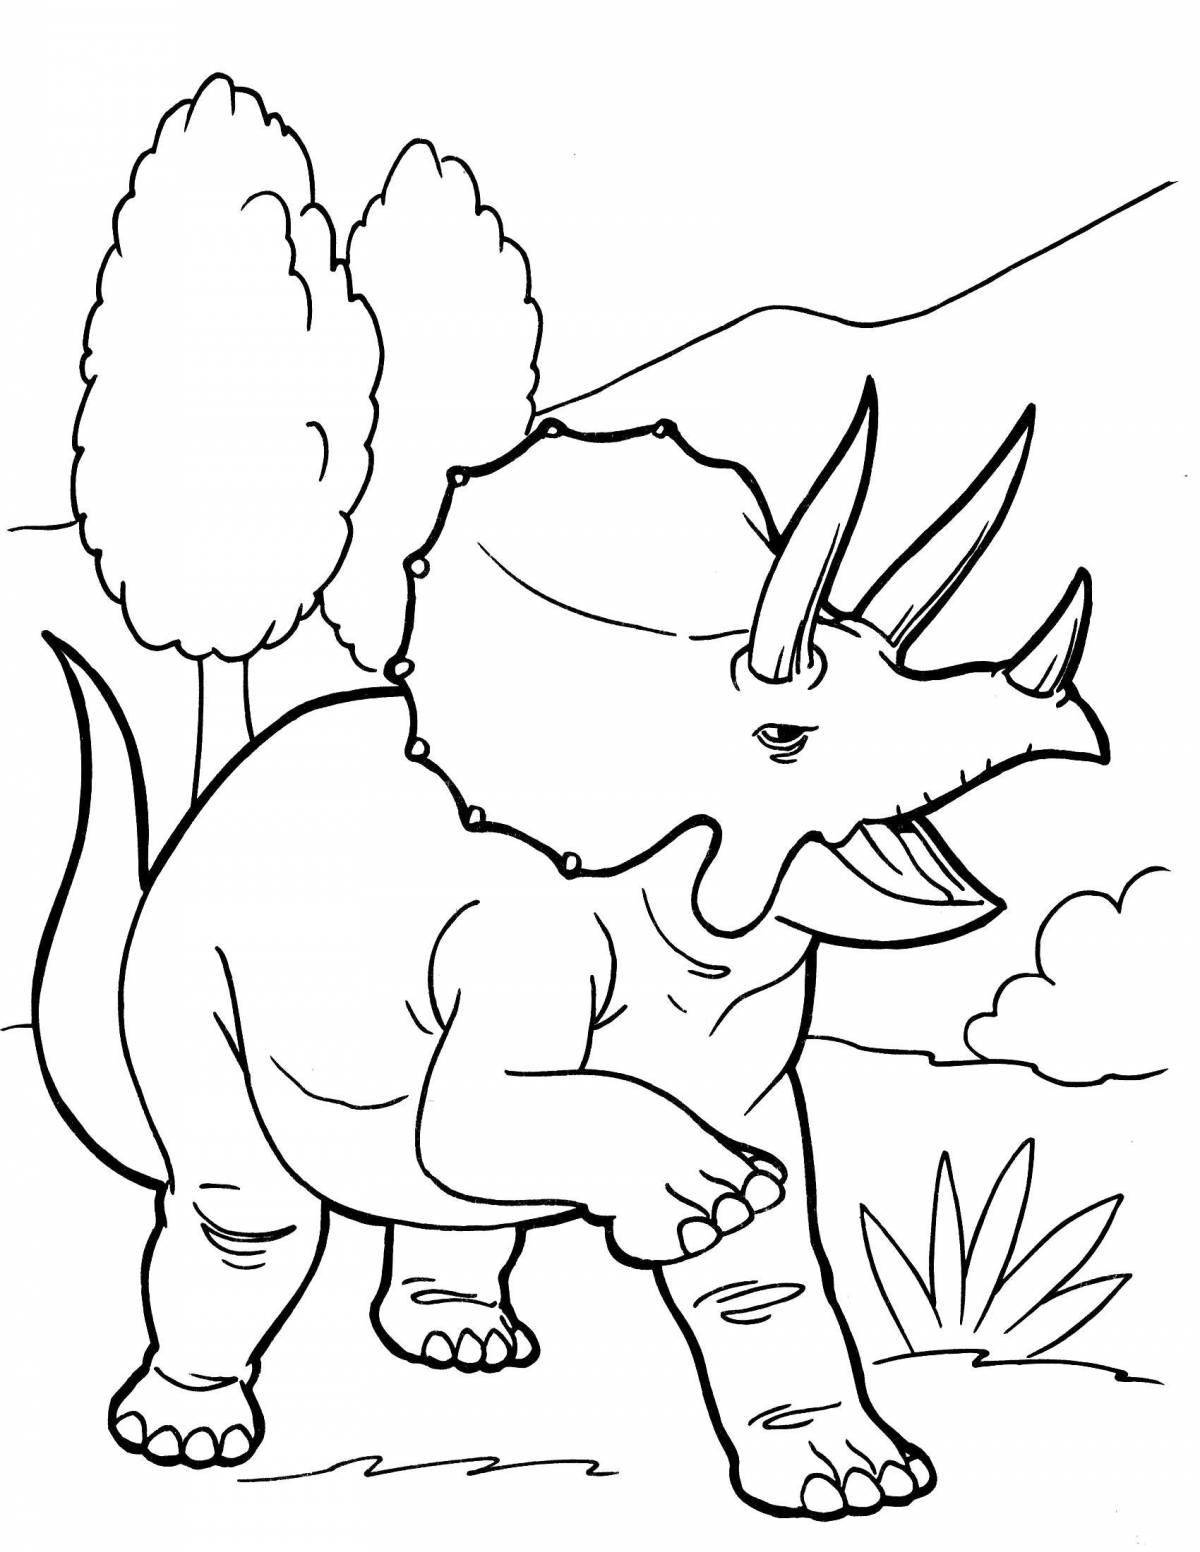 Веселые раскраски динозавров для детей 5 лет